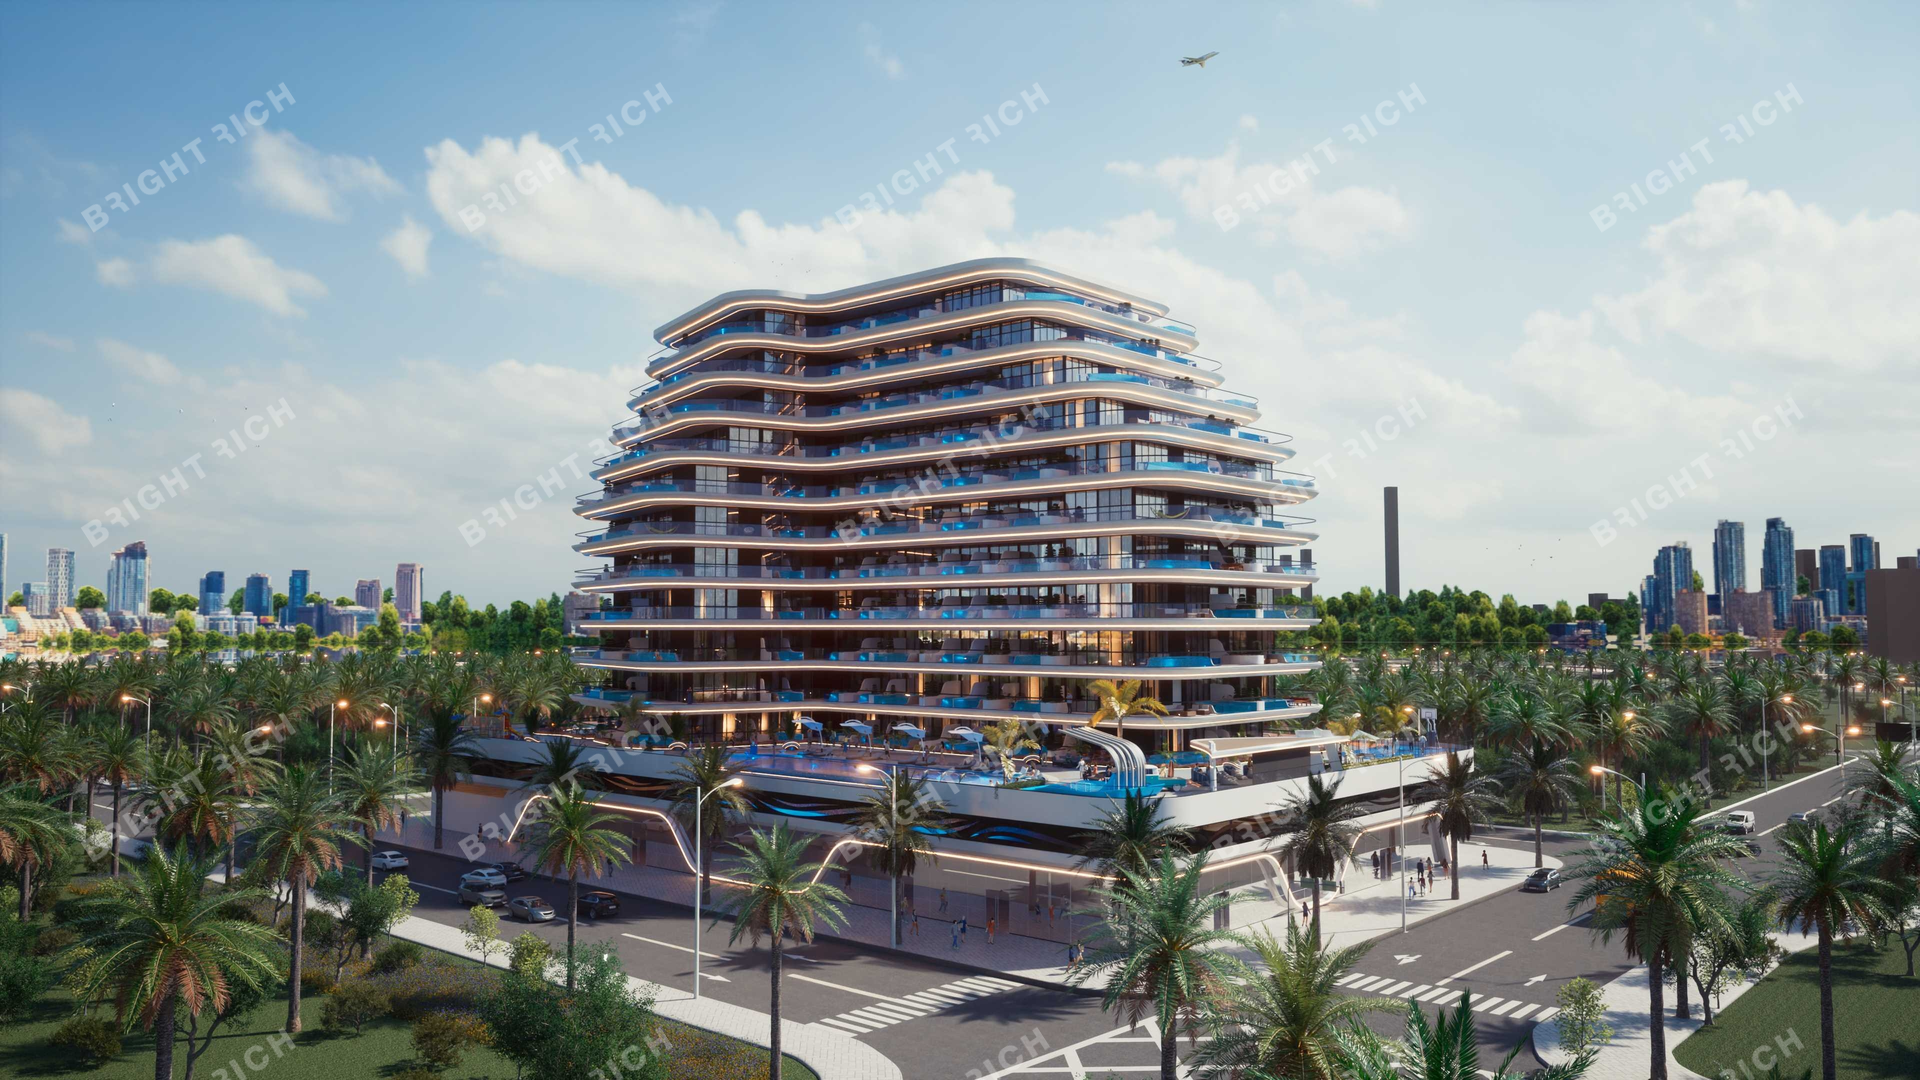 Samana Portofino, apart complex in Dubai - 3